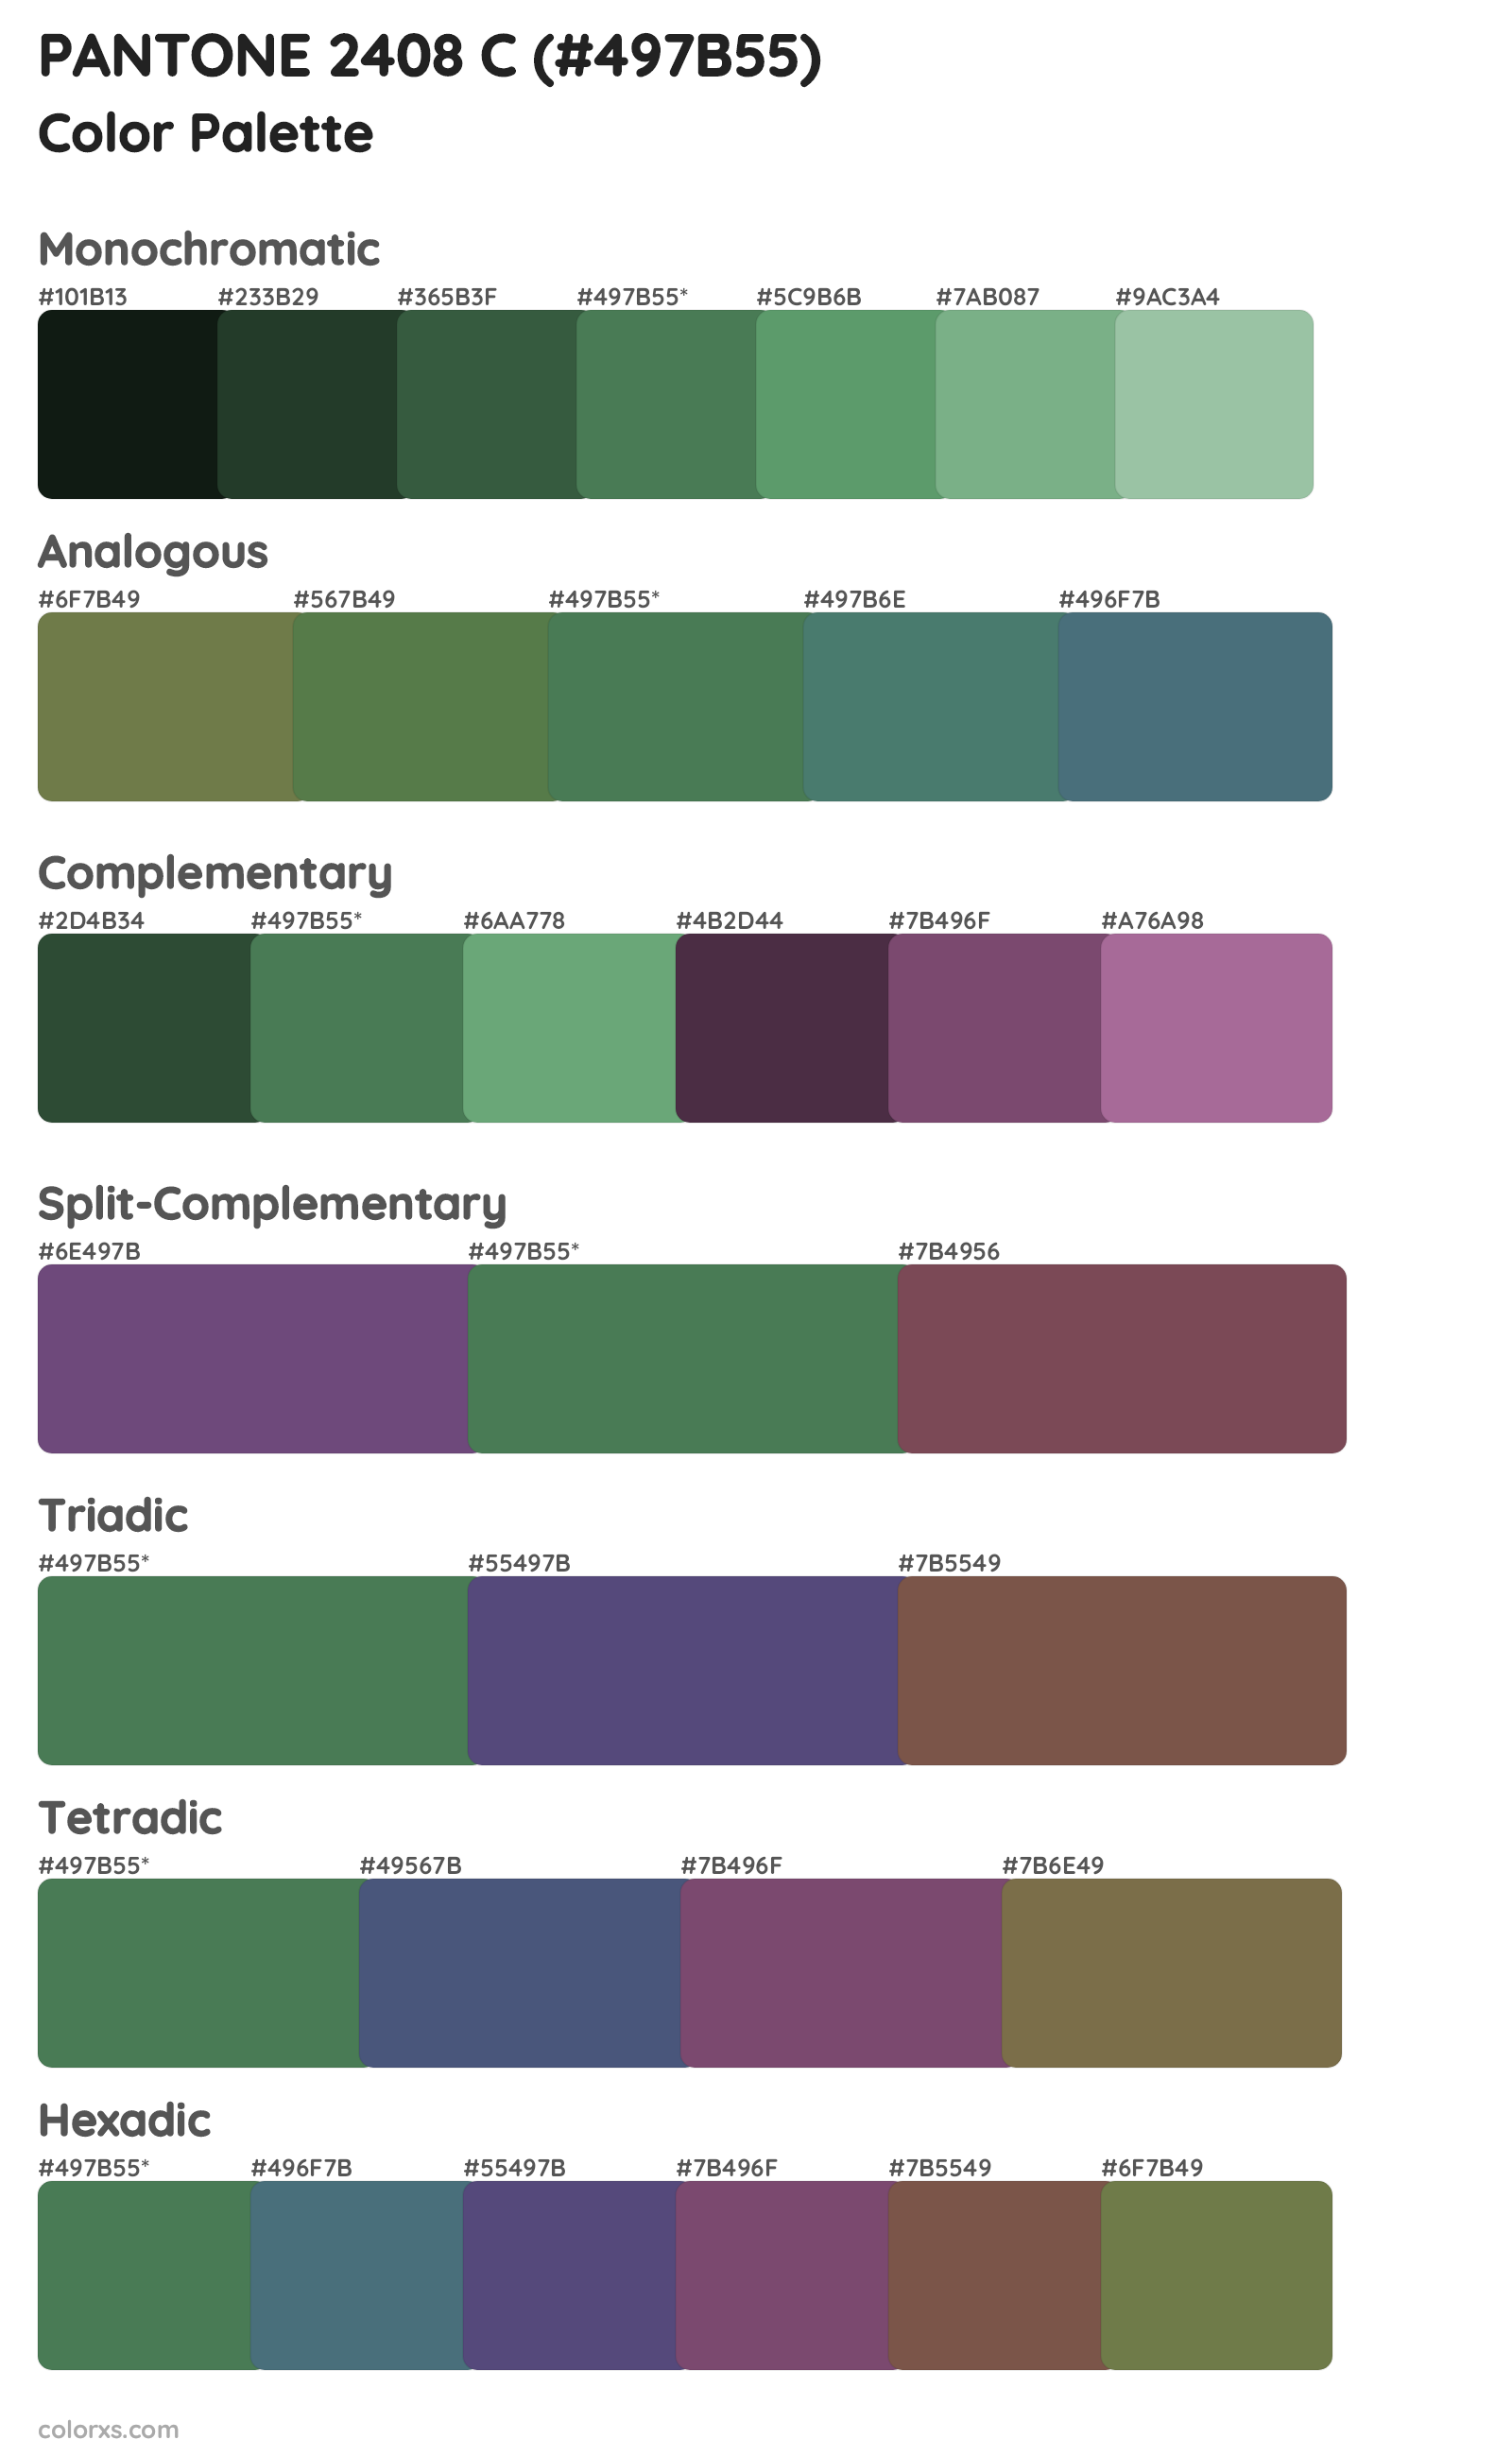 PANTONE 2408 C Color Scheme Palettes